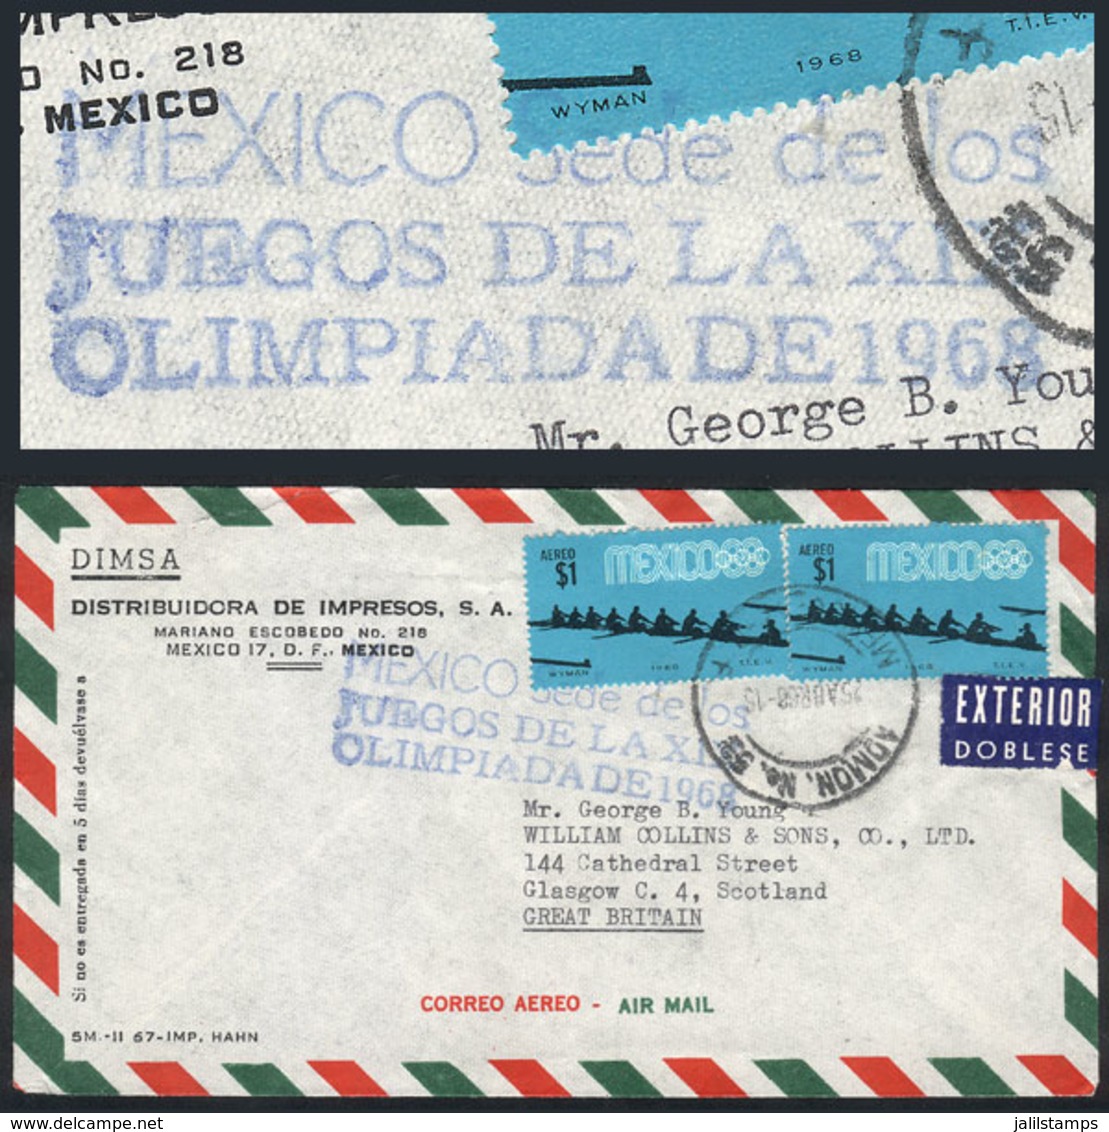 MEXICO: 25/AP/1968 Mexico DF - Great Britain, Airmail Cover With Blue Handstamp "MEXICO SEDE DE LOS JUEGOS DE LA XIX OLI - México